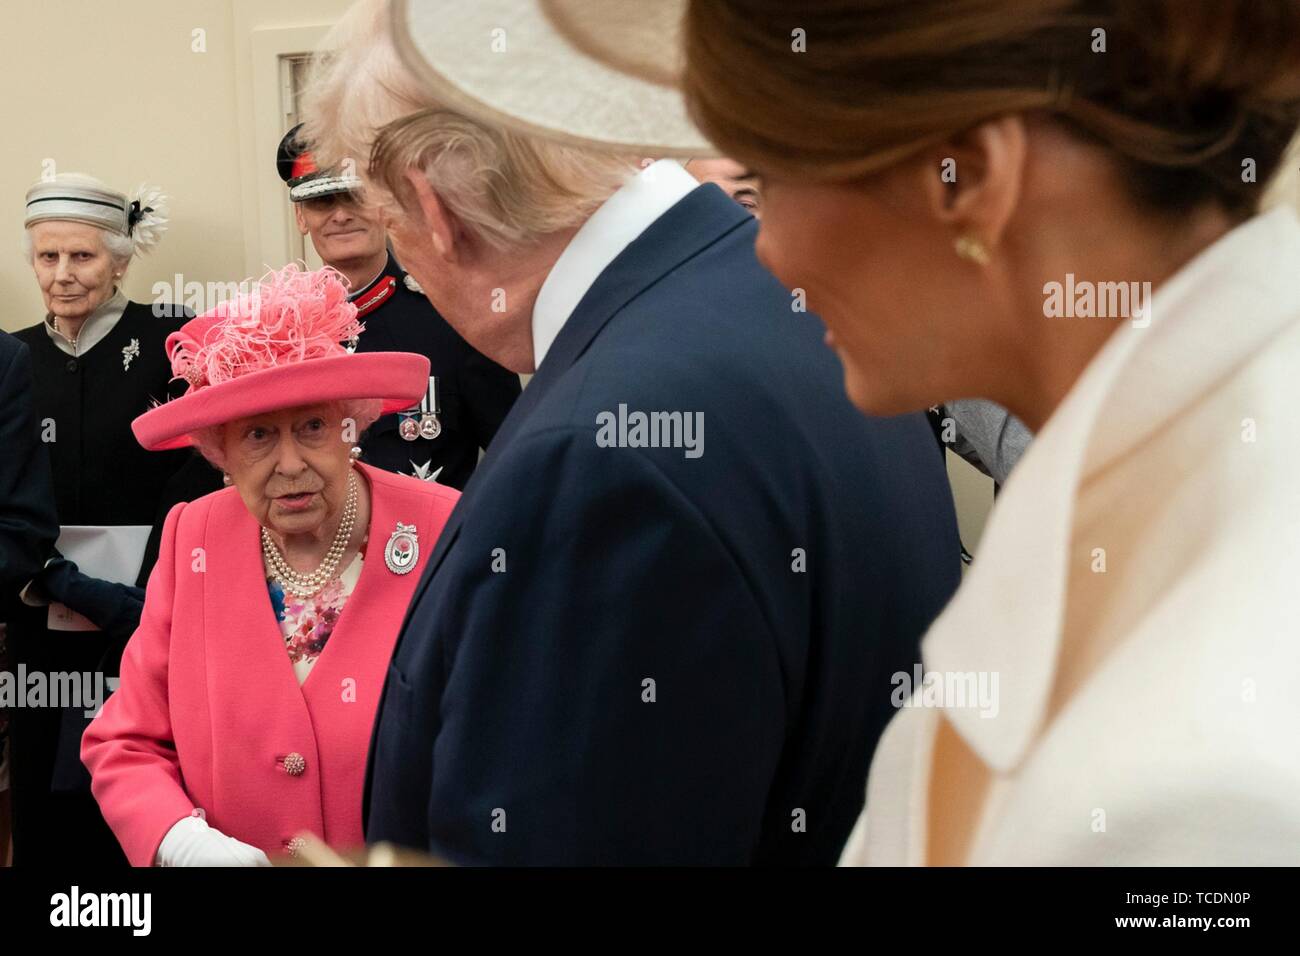 U.S presidente Donald Trump e la First Lady Melania Trump chat con la regina Elisabetta II durante un evento che segna il settantacinquesimo anniversario del D-Day Giugno 5, 2019 in Portsmouth, Inghilterra. Foto Stock